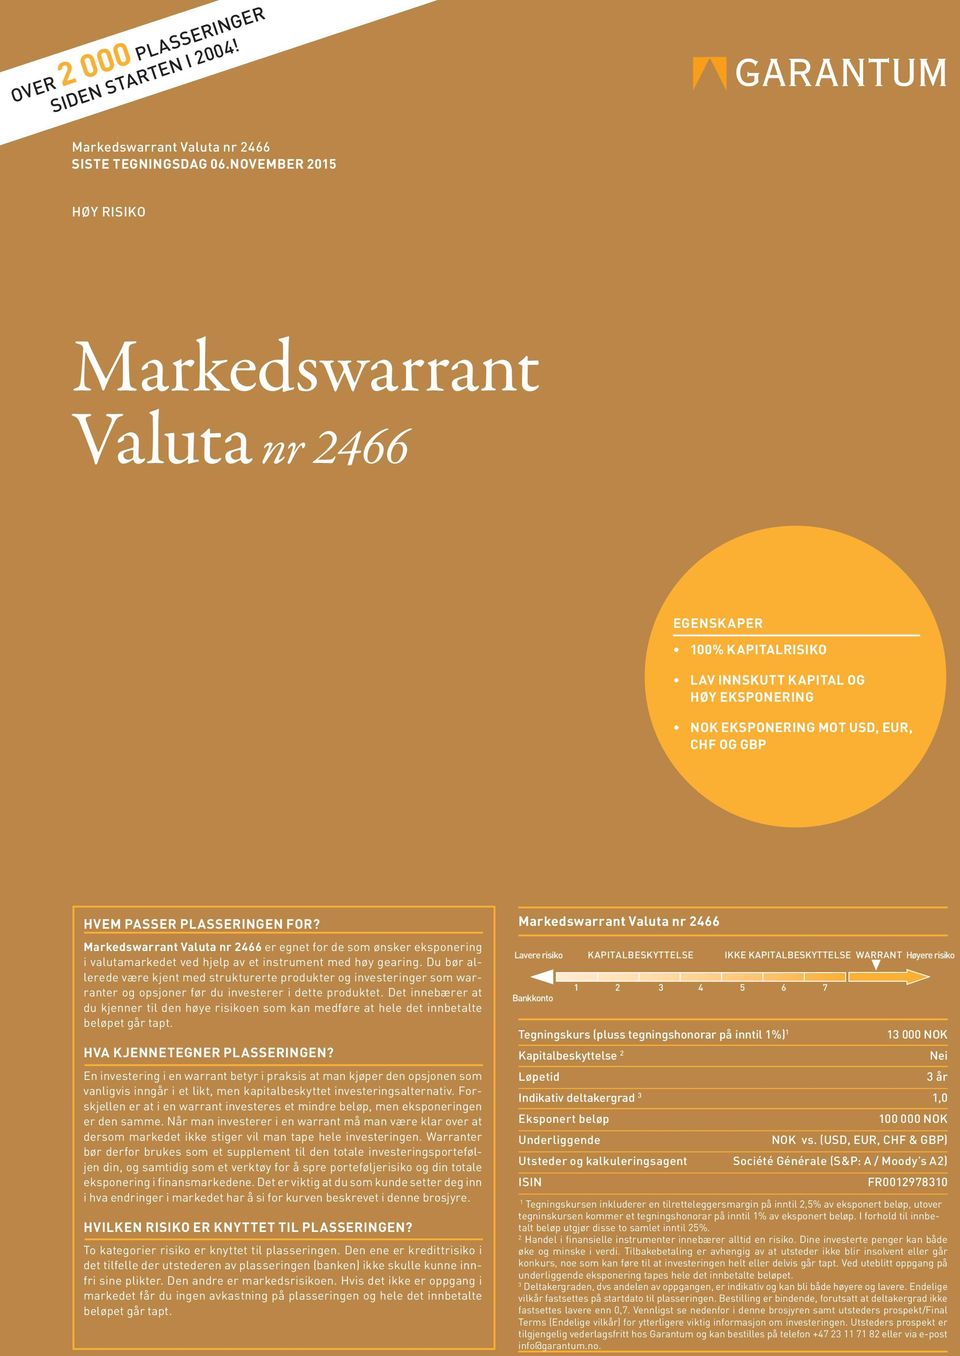 Markedswarrant Valuta nr 2466 er egnet for de som ønsker eksponering i valutamarkedet ved hjelp av et instrument med høy gearing.